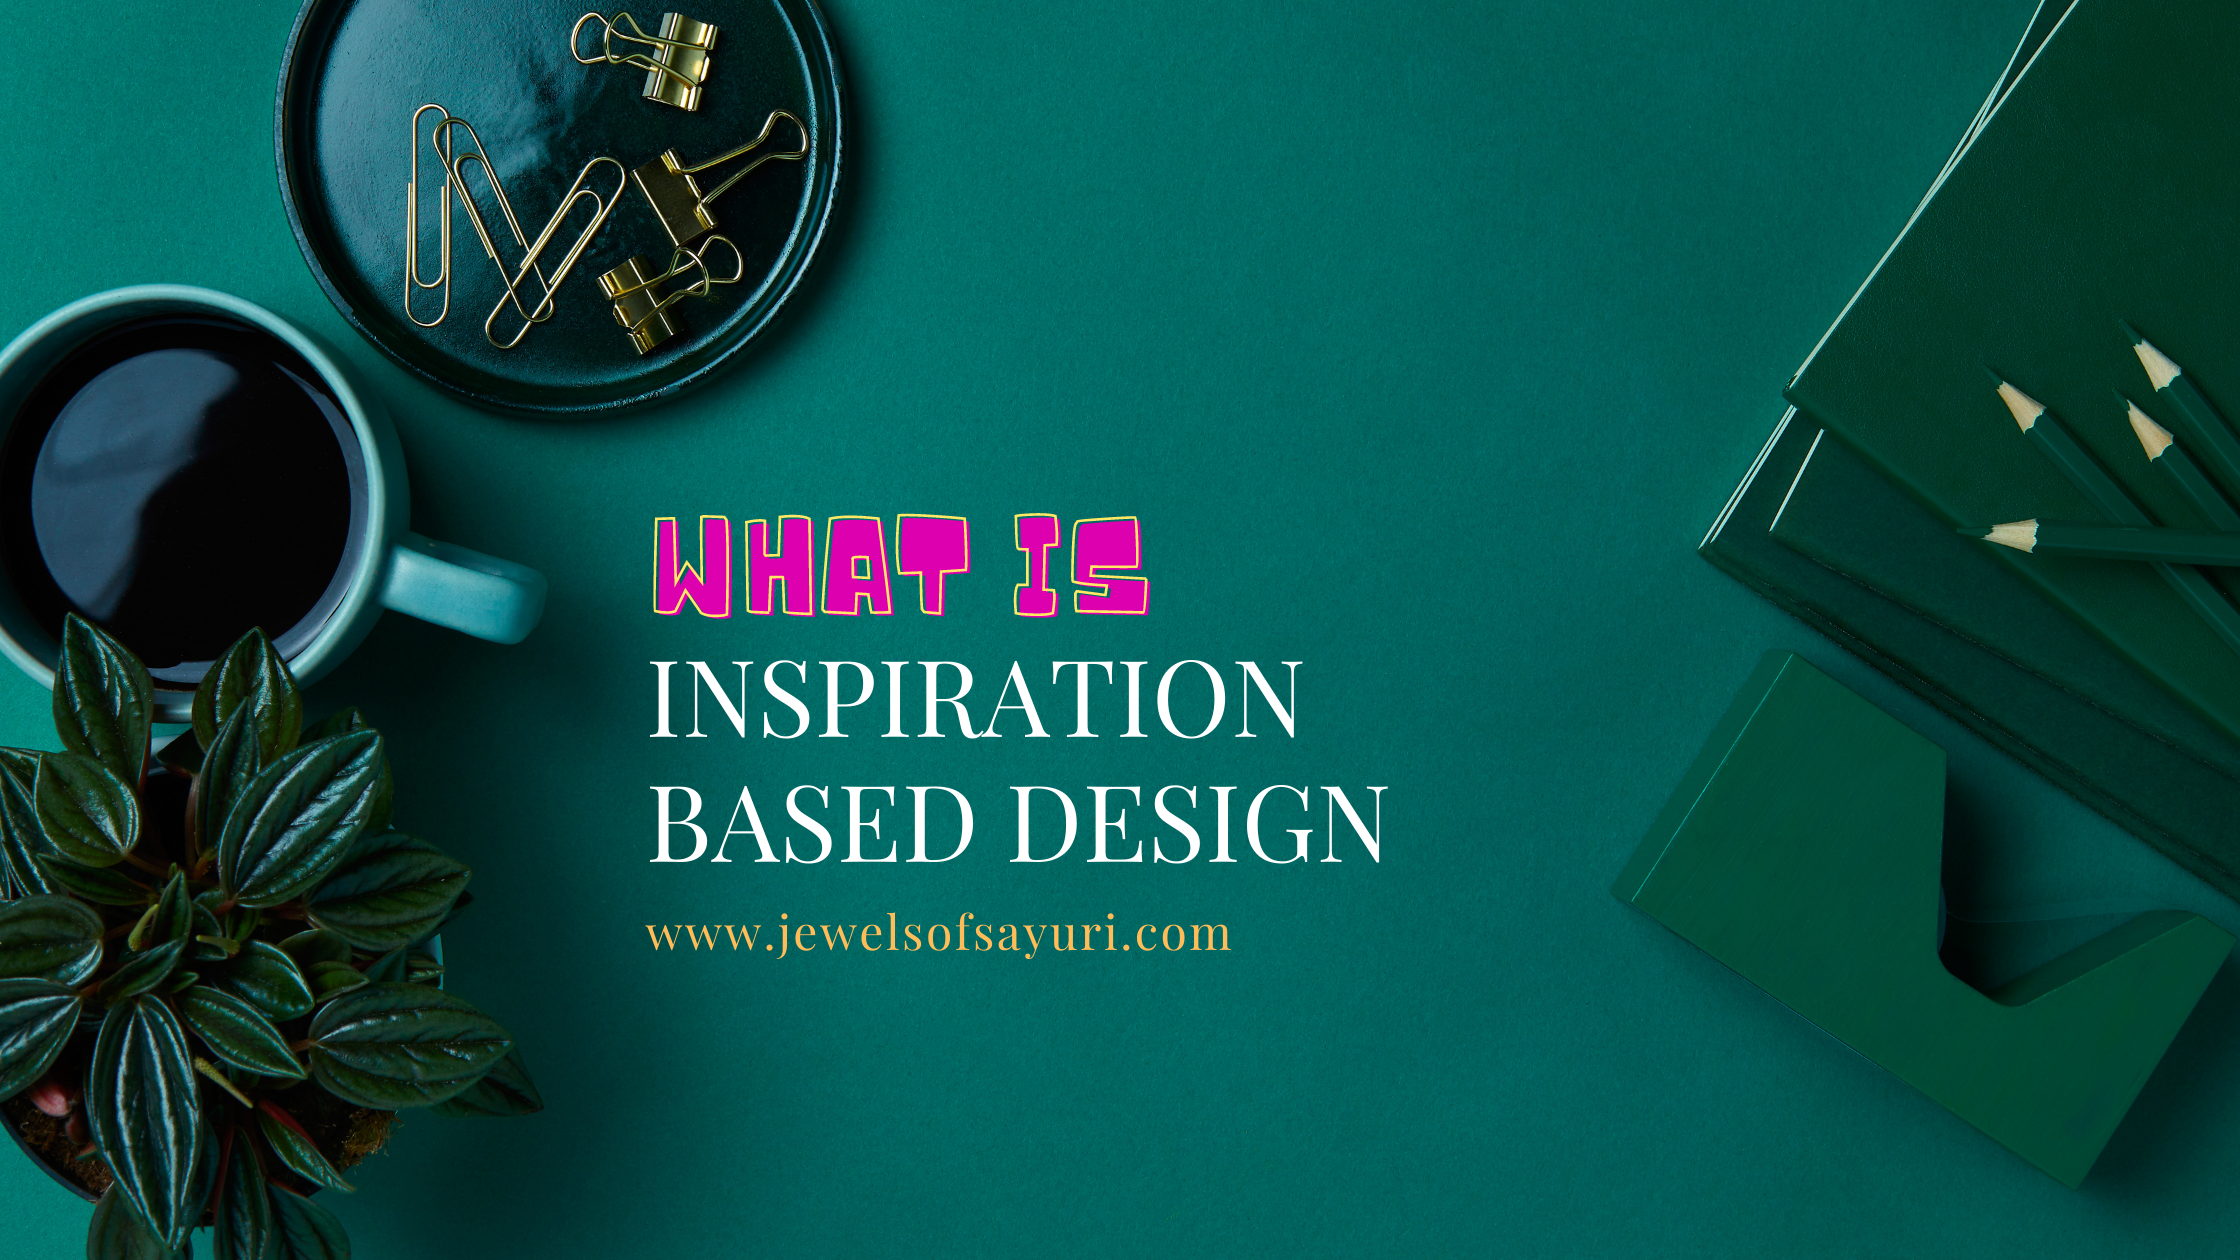 Inspiration based design